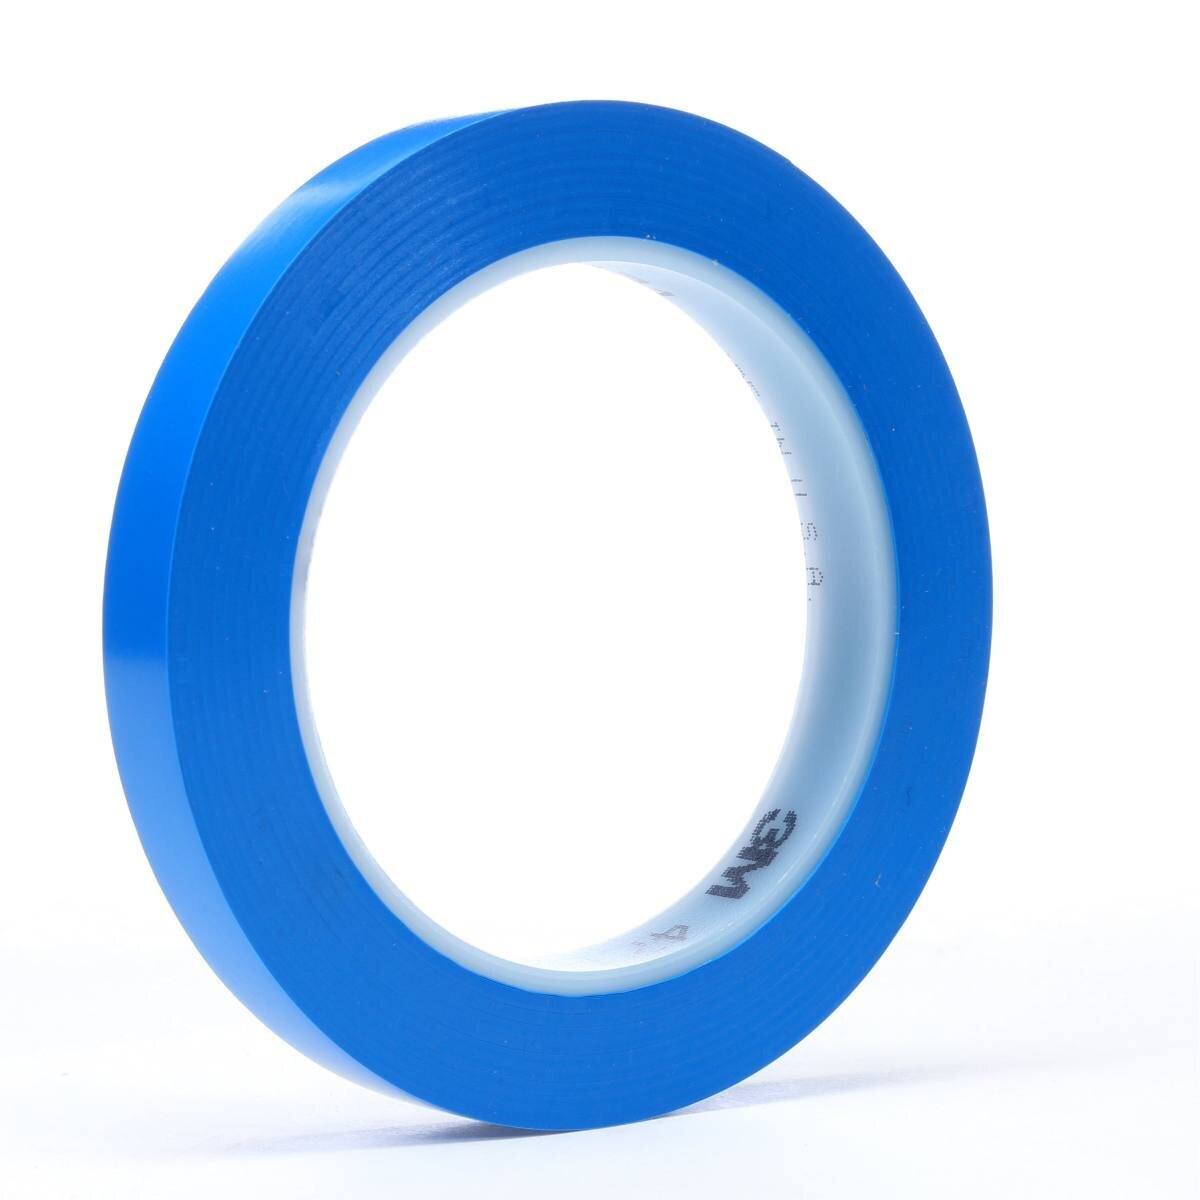 3M Ruban adhésif en PVC souple 471 F, bleu, 9 mm x 33 m, 0,13 mm